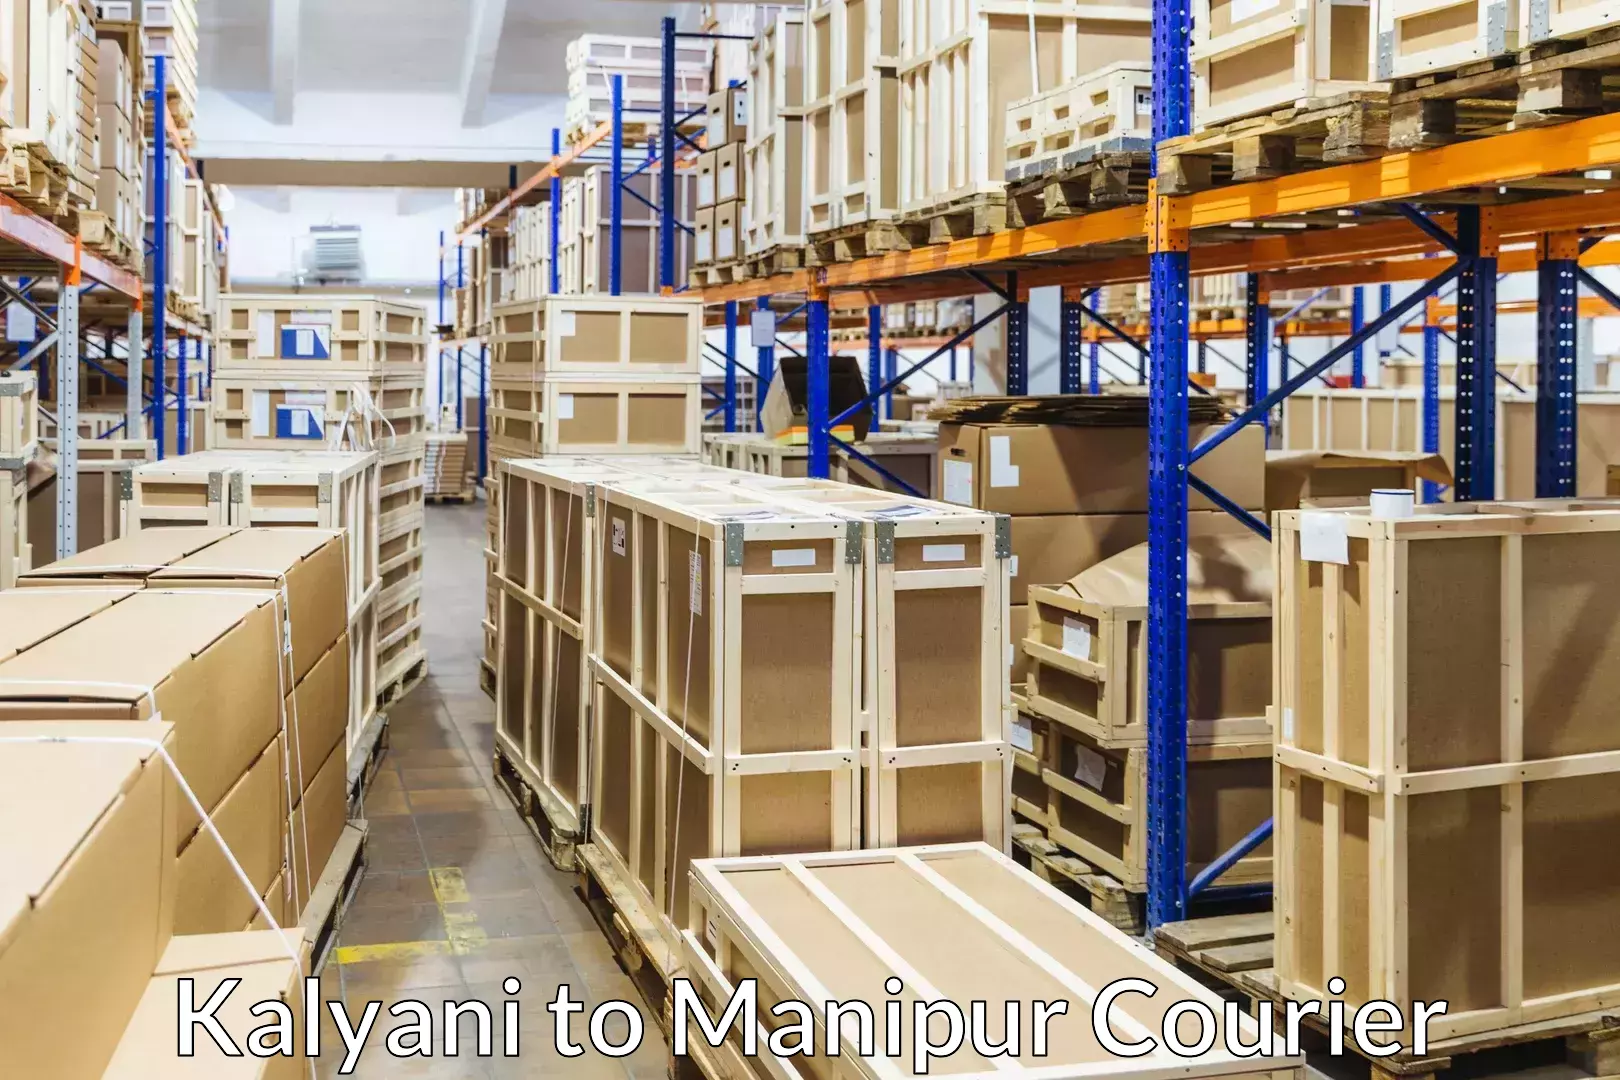 Furniture transport service Kalyani to Kanti